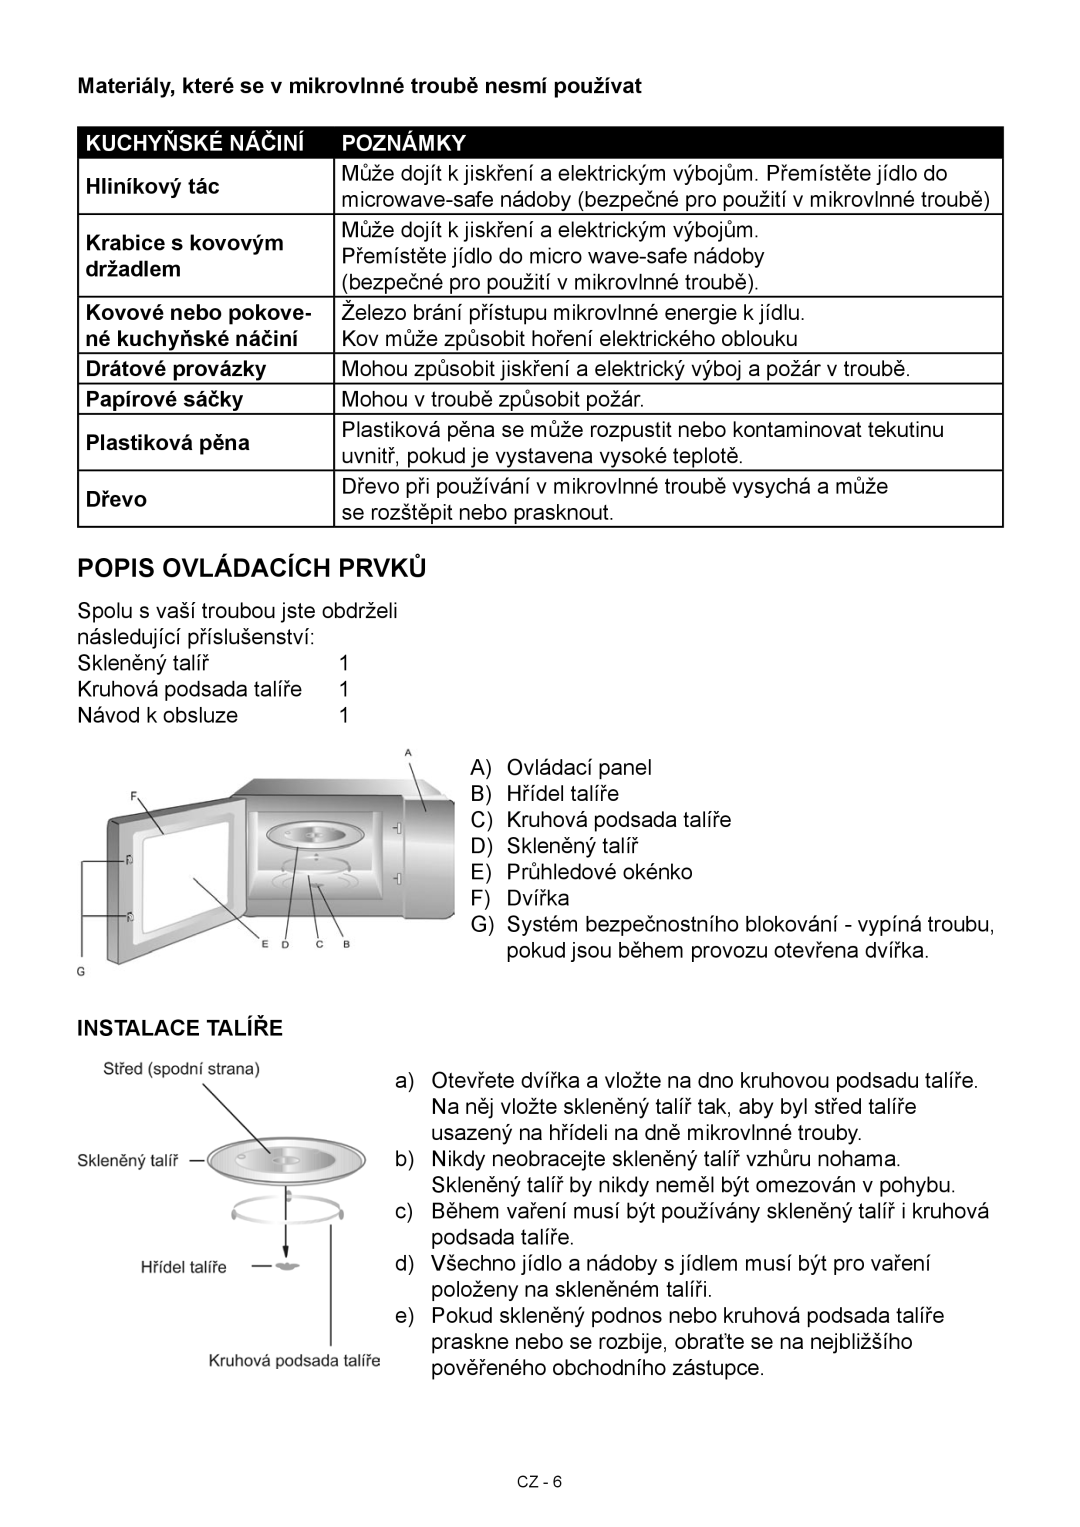 Hyundai MWEGH 281S Popis ovládacích prvků, Materiály, které se v mikrovlnné troubě nesmí používat, Hliníkový tác, držadlem 